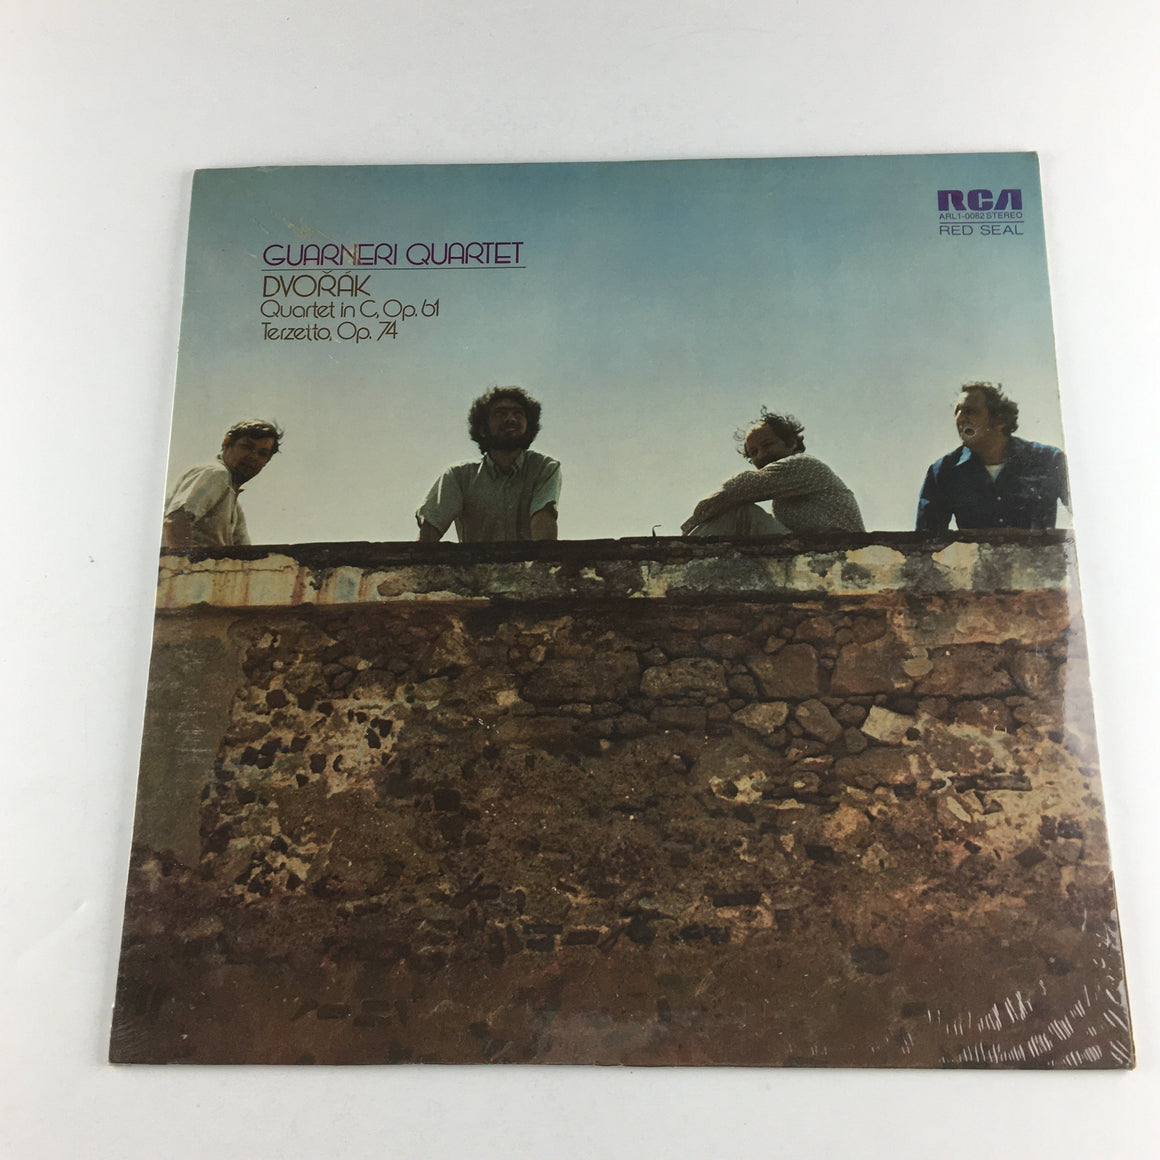 Dvorak Guarneri Quartet In C Op. 61 Terzetto Op. 74 New Vinyl LP VG+\VG